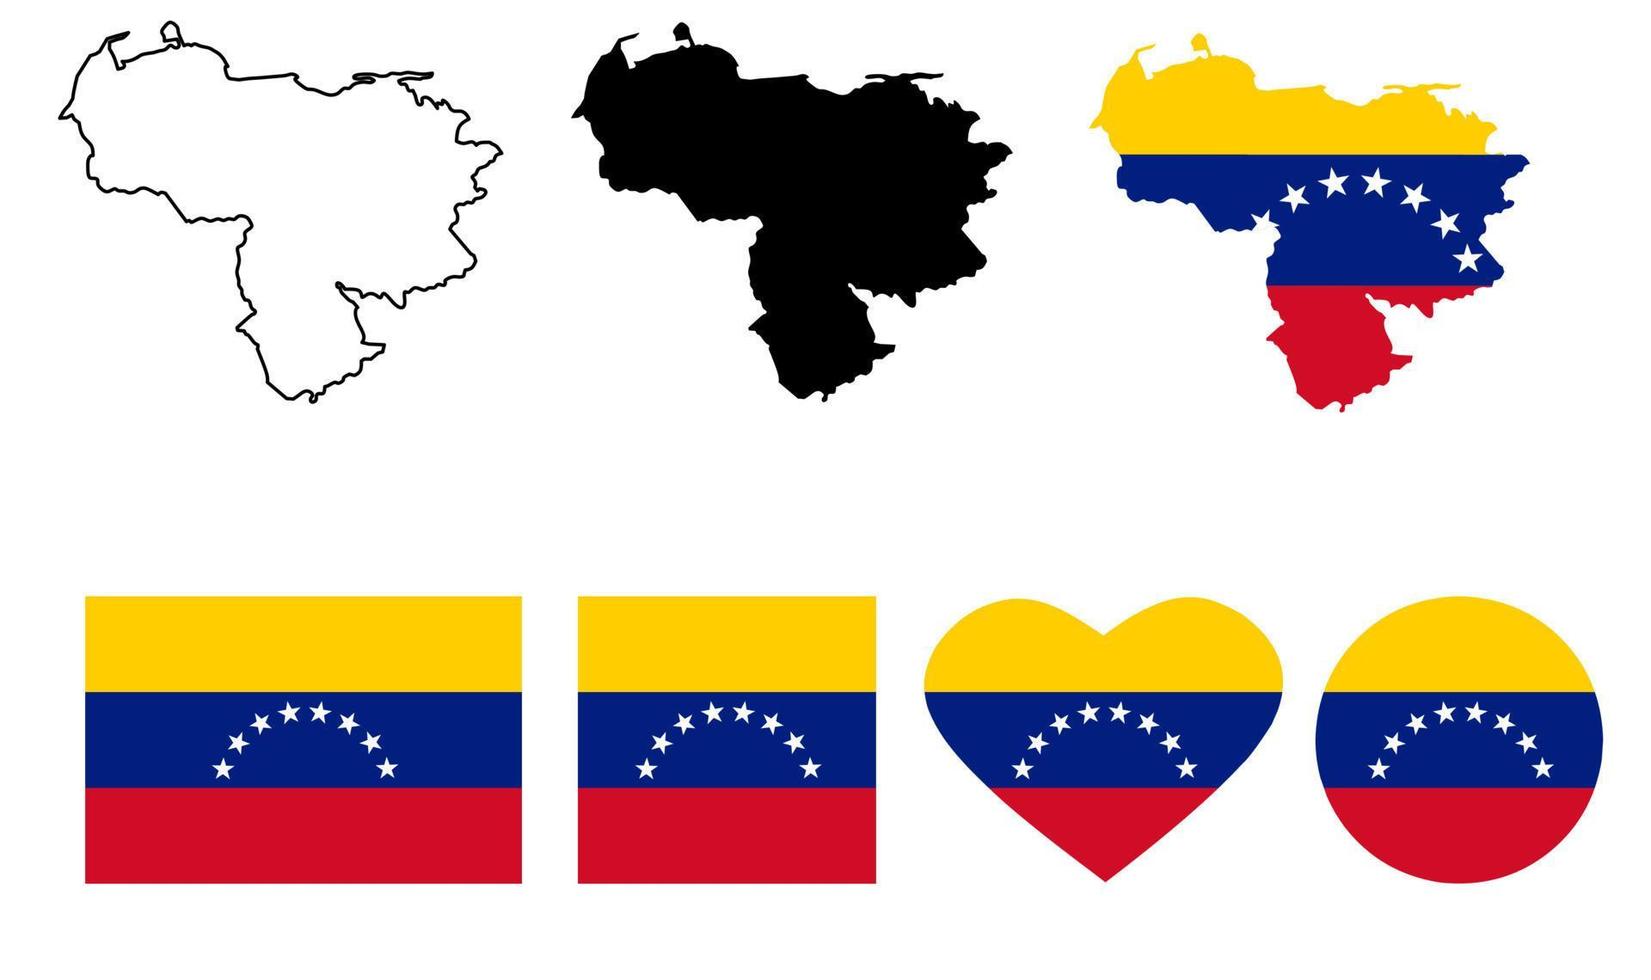 bolivariska republiken venezuela kartflagga ikonuppsättning vektor